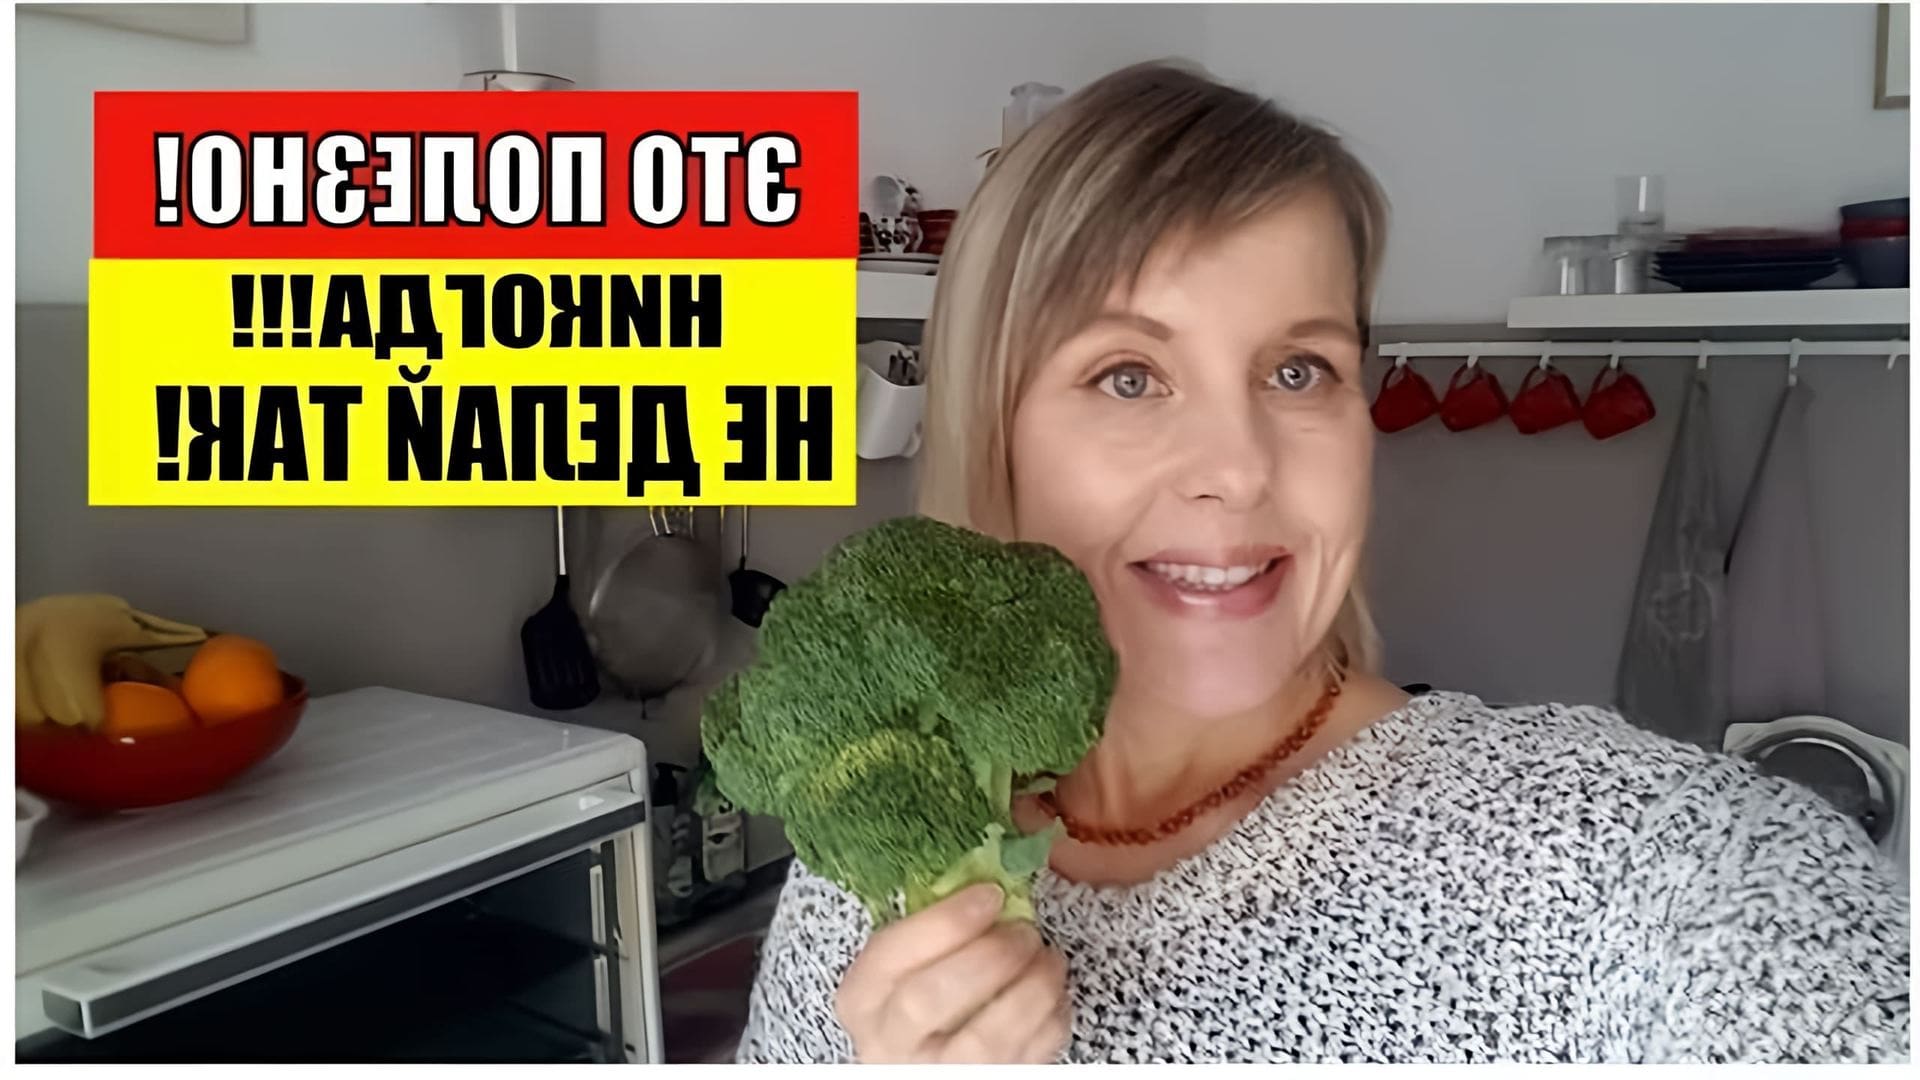 В этом видео рассказывается о пользе брокколи для здоровья и о том, как правильно ее готовить